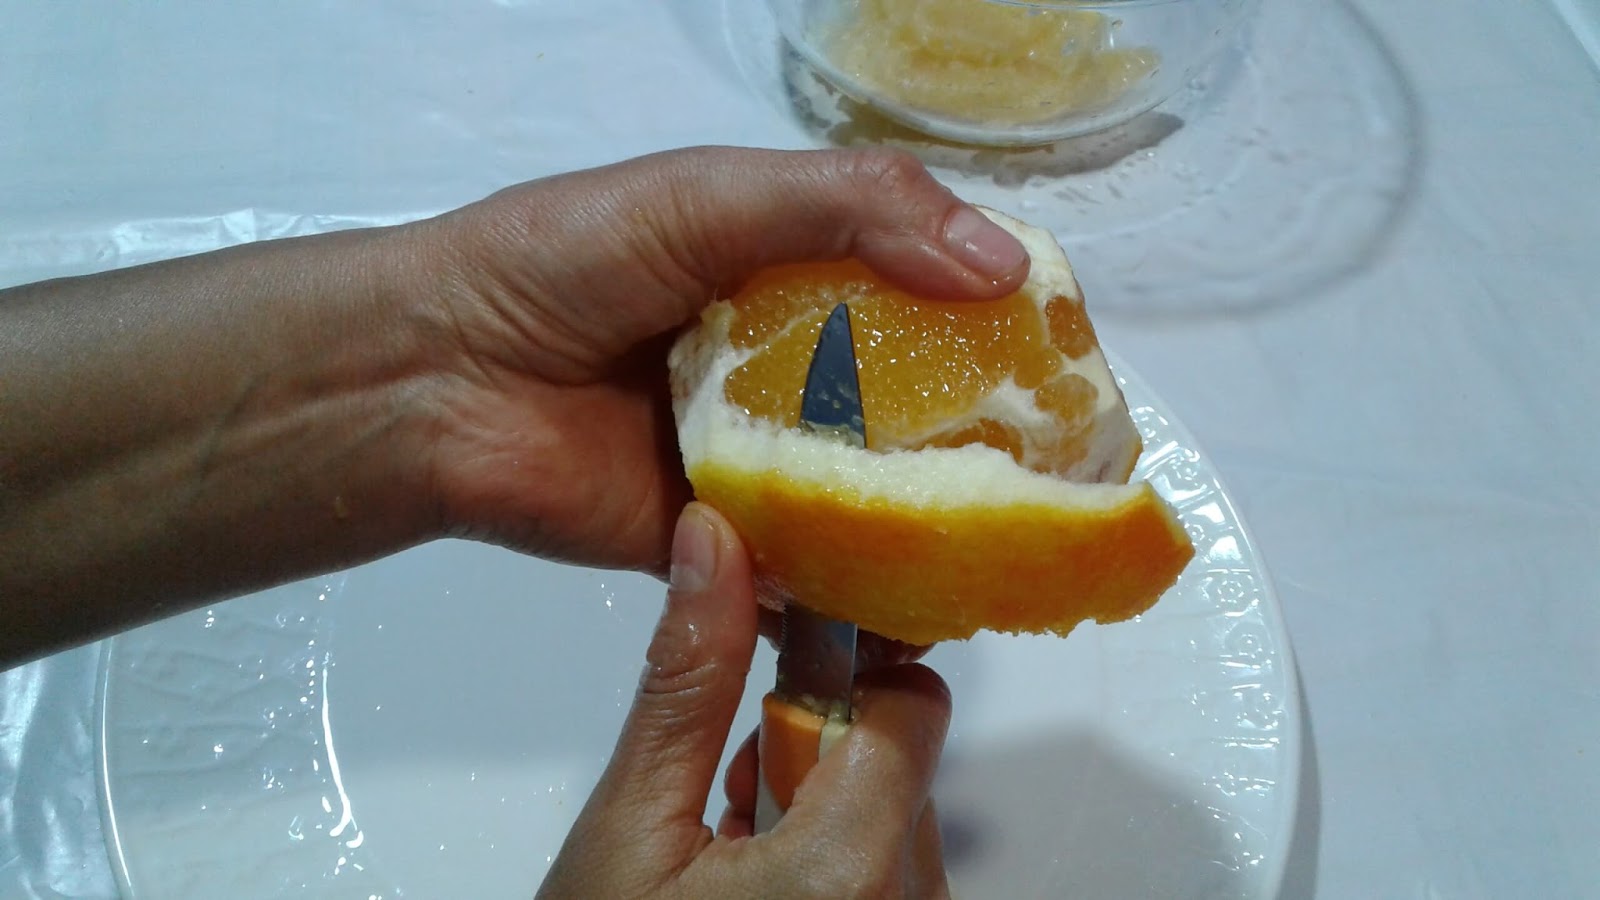 وصفة البرتقال و القرفة لتخفيف الوزن